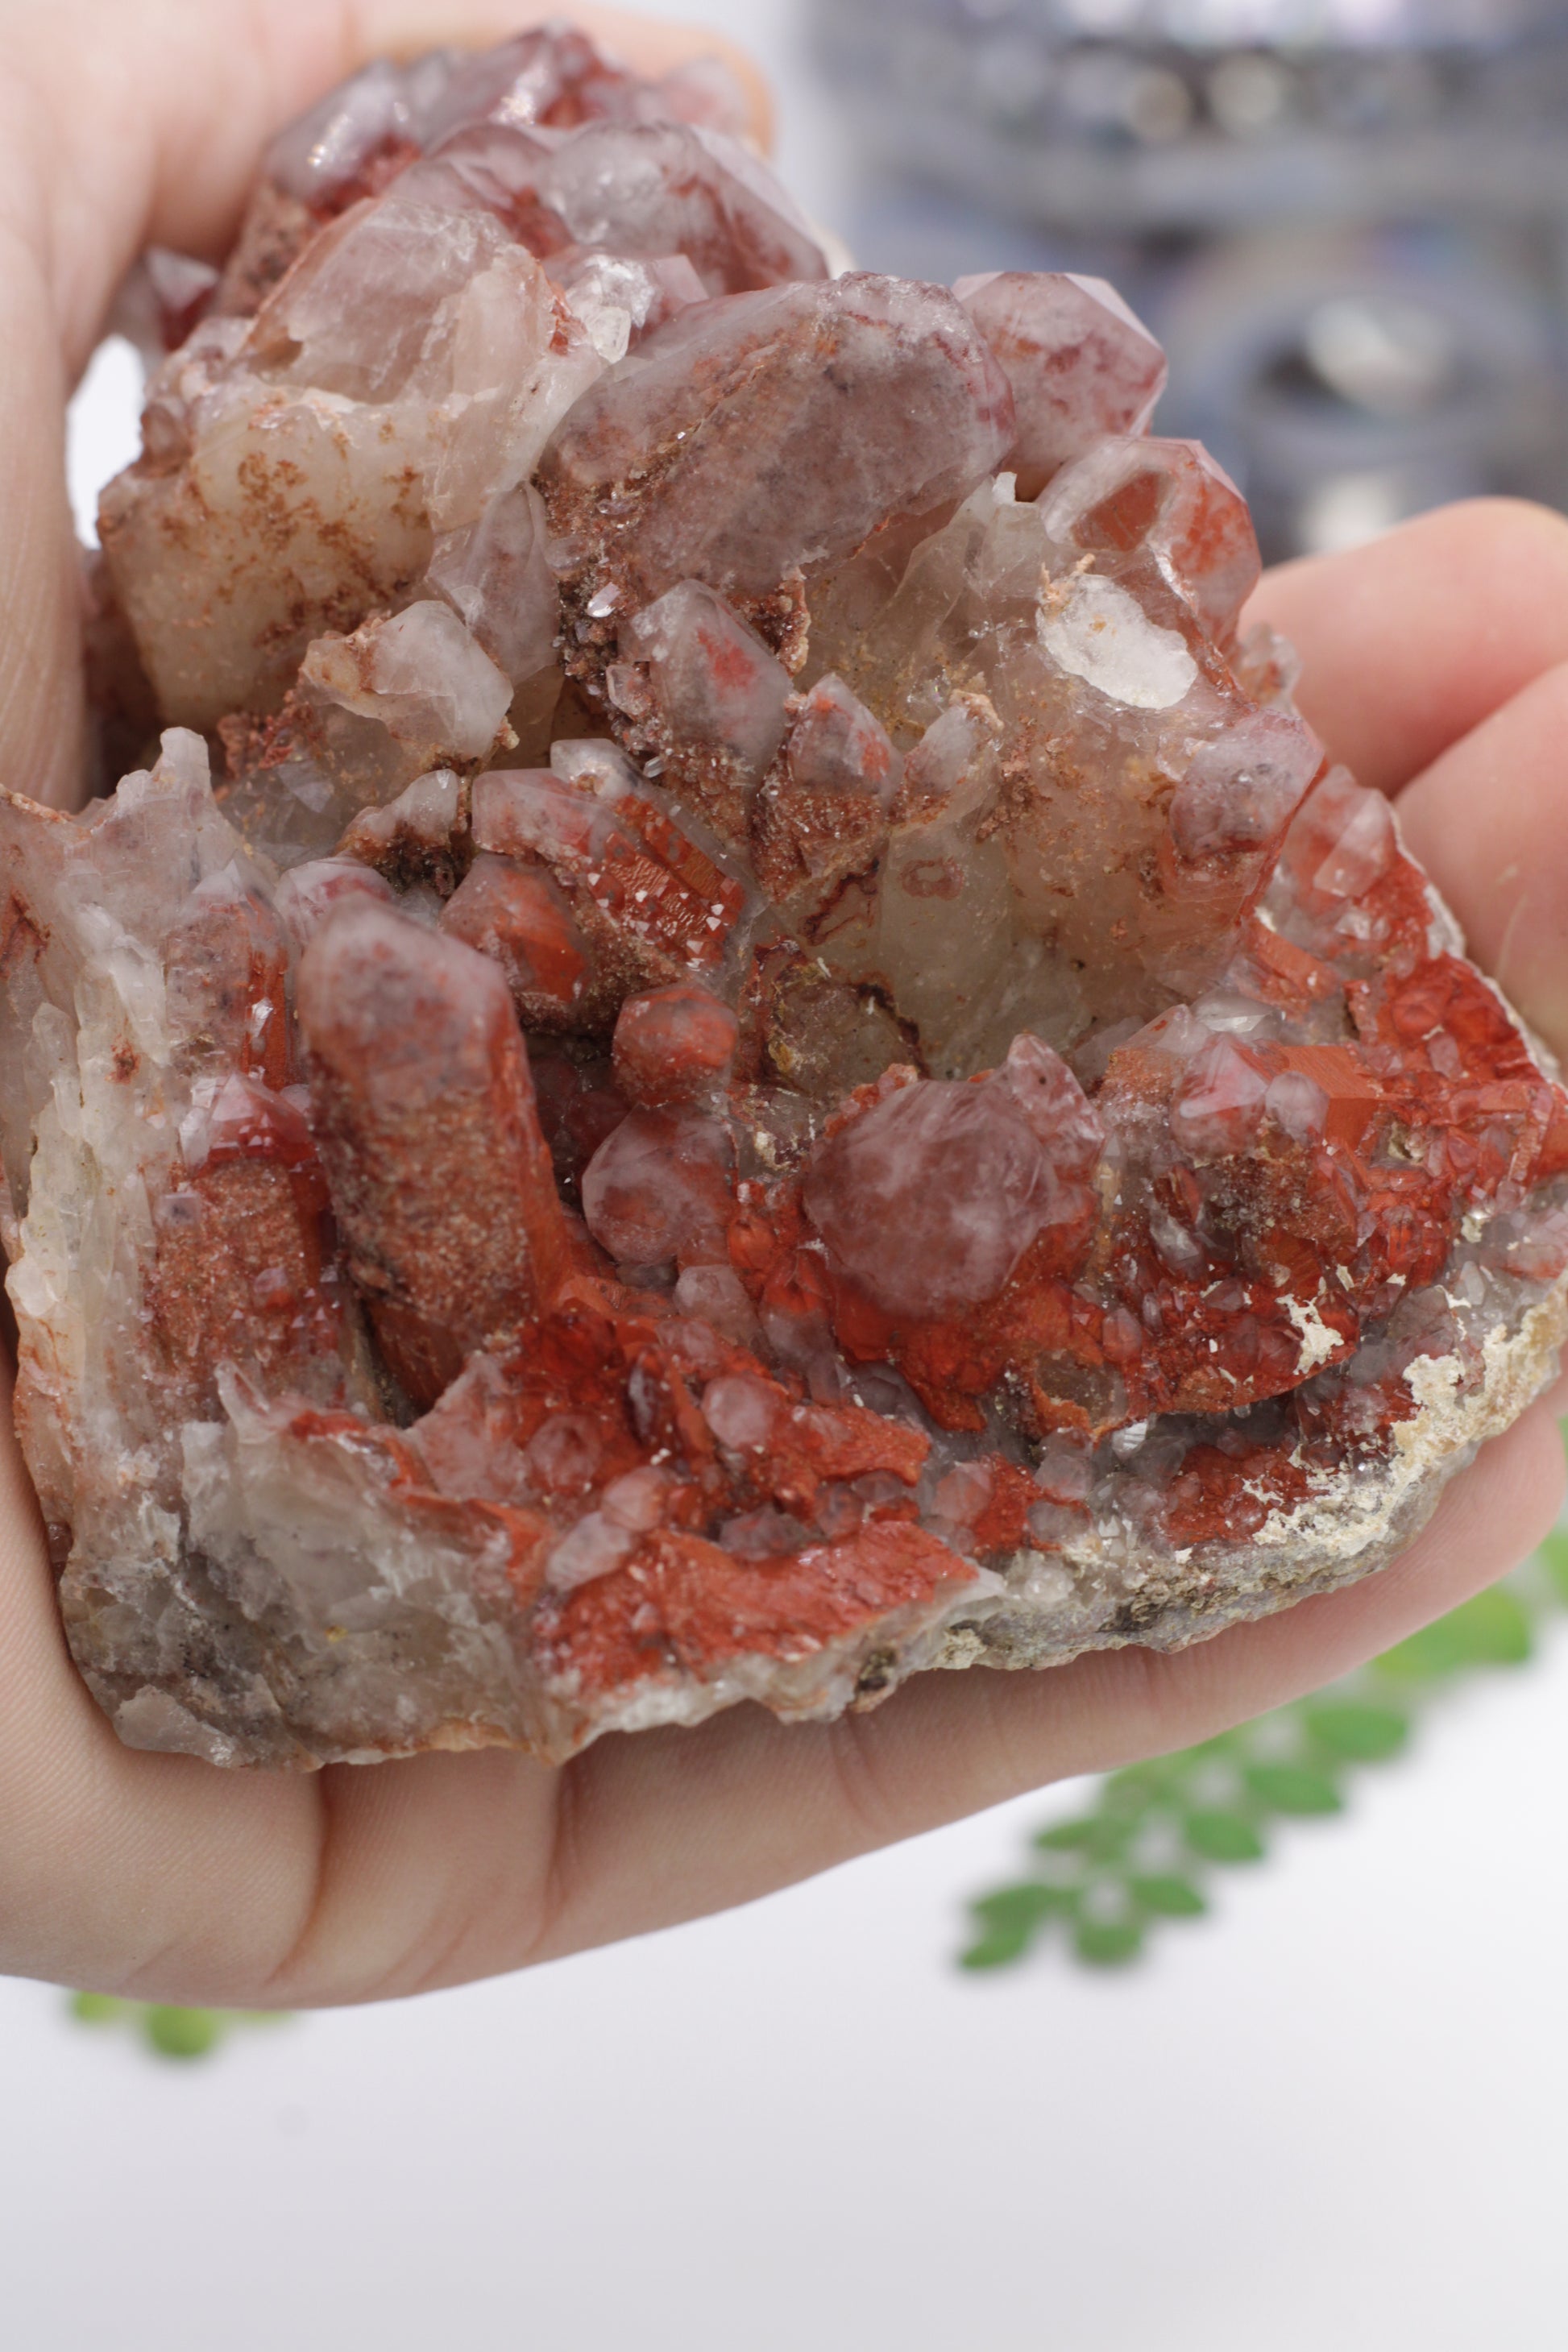 red hematite quartz